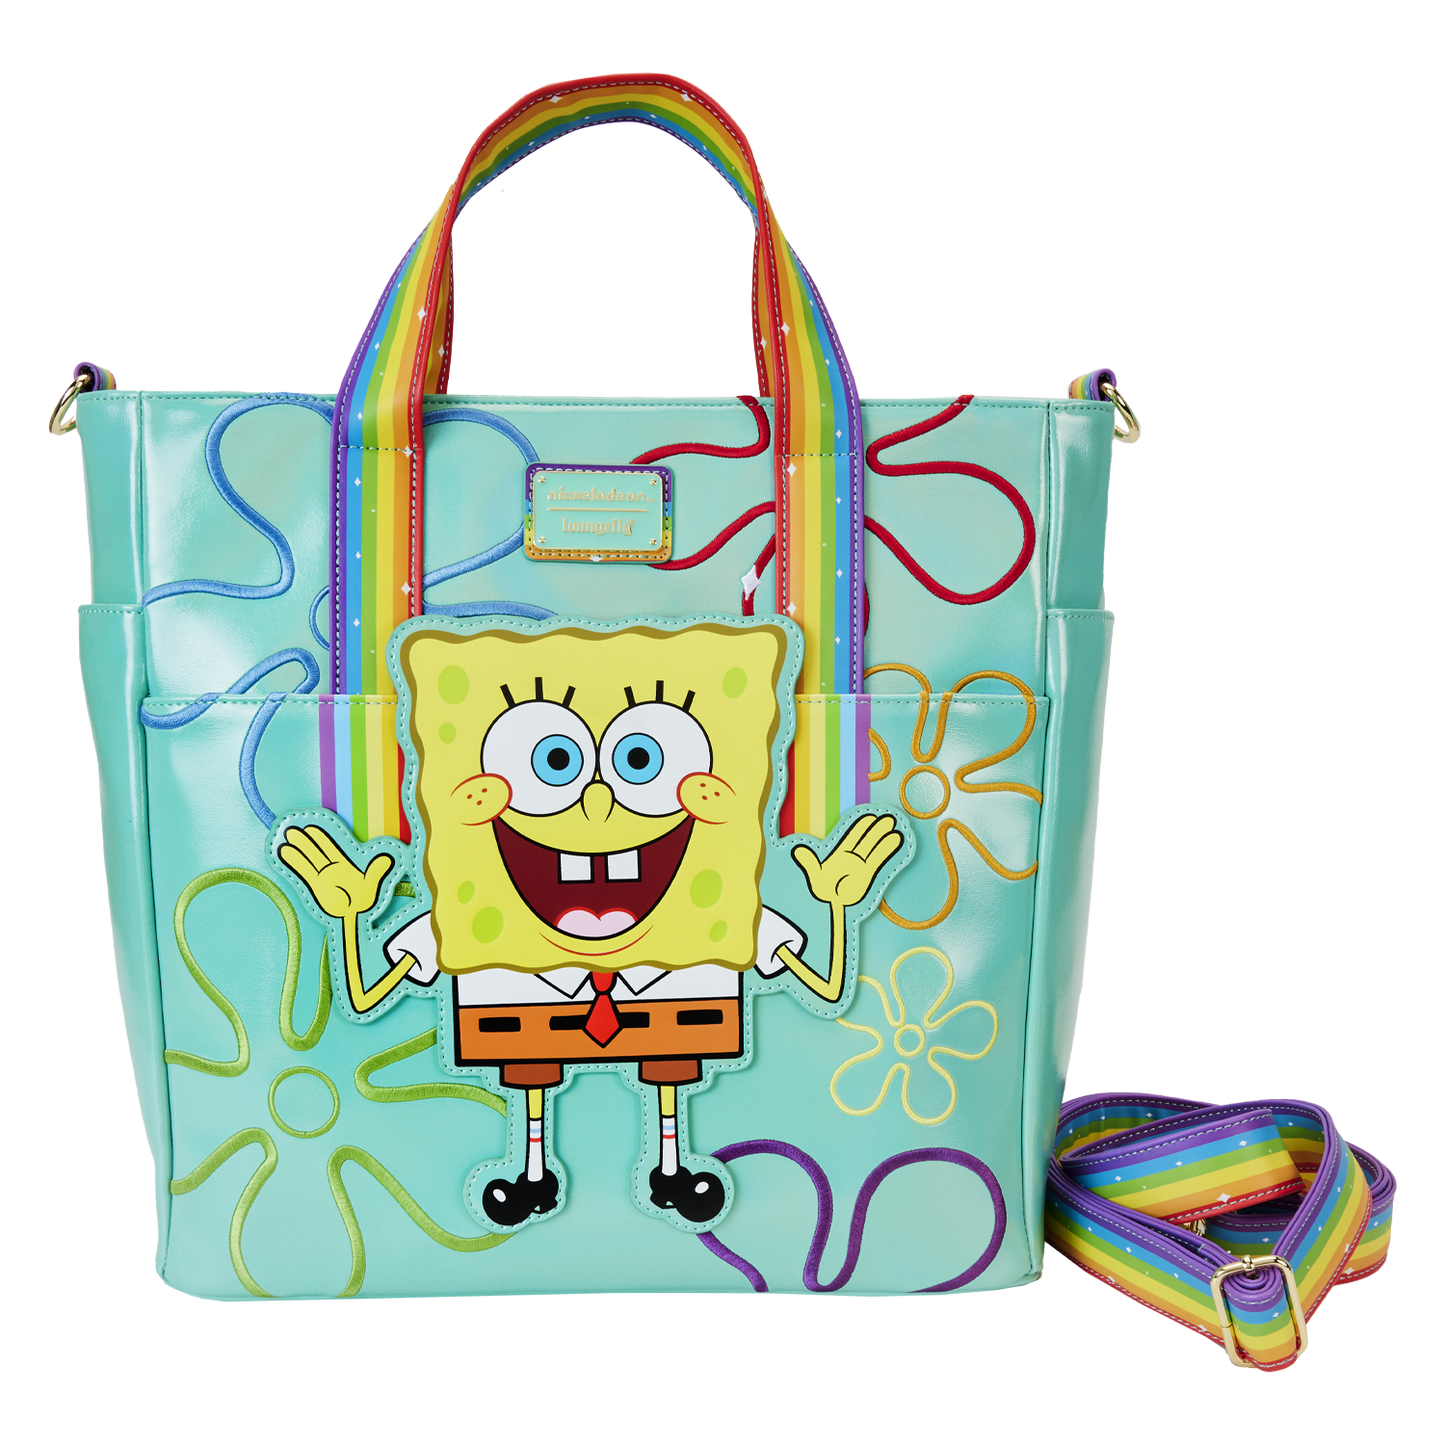 SpongeBob SquarePants 25th Anniversary Imagination Convertible Backpack & Tote Bag